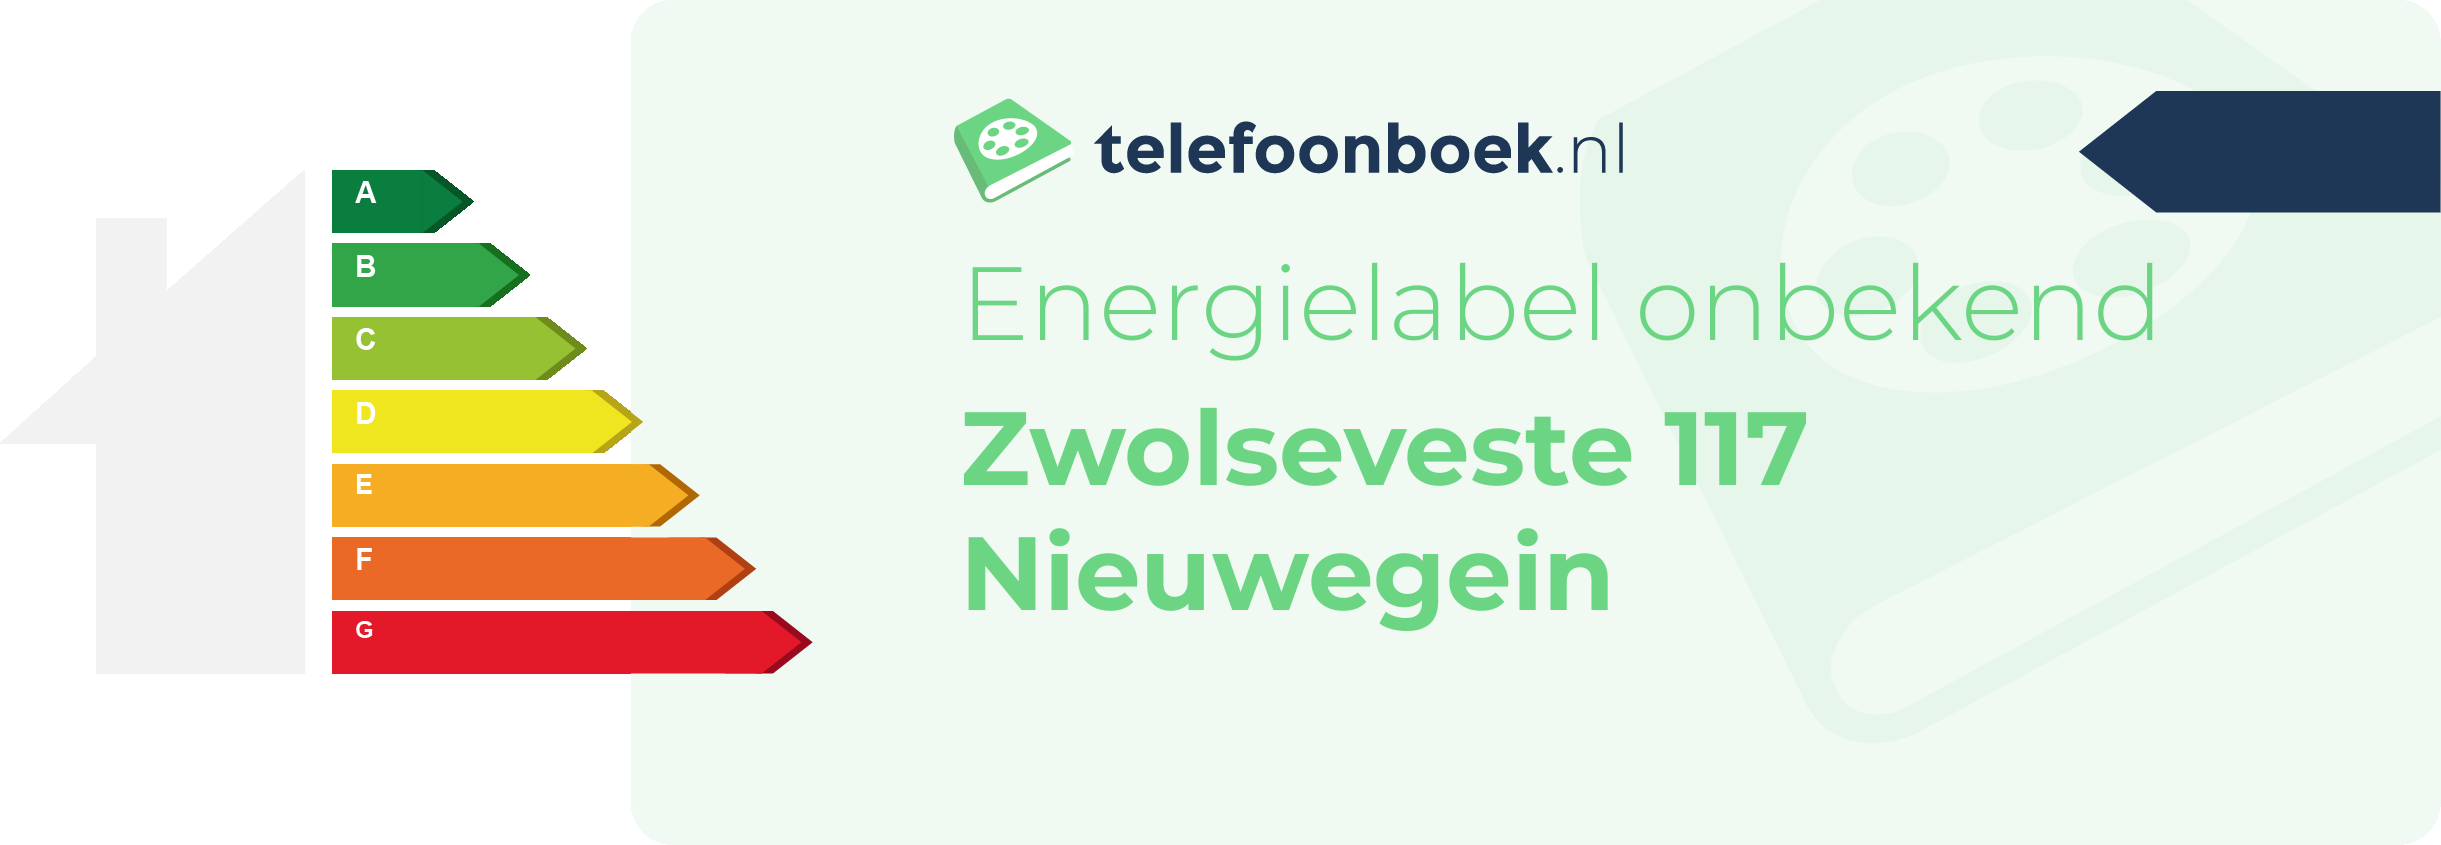 Energielabel Zwolseveste 117 Nieuwegein